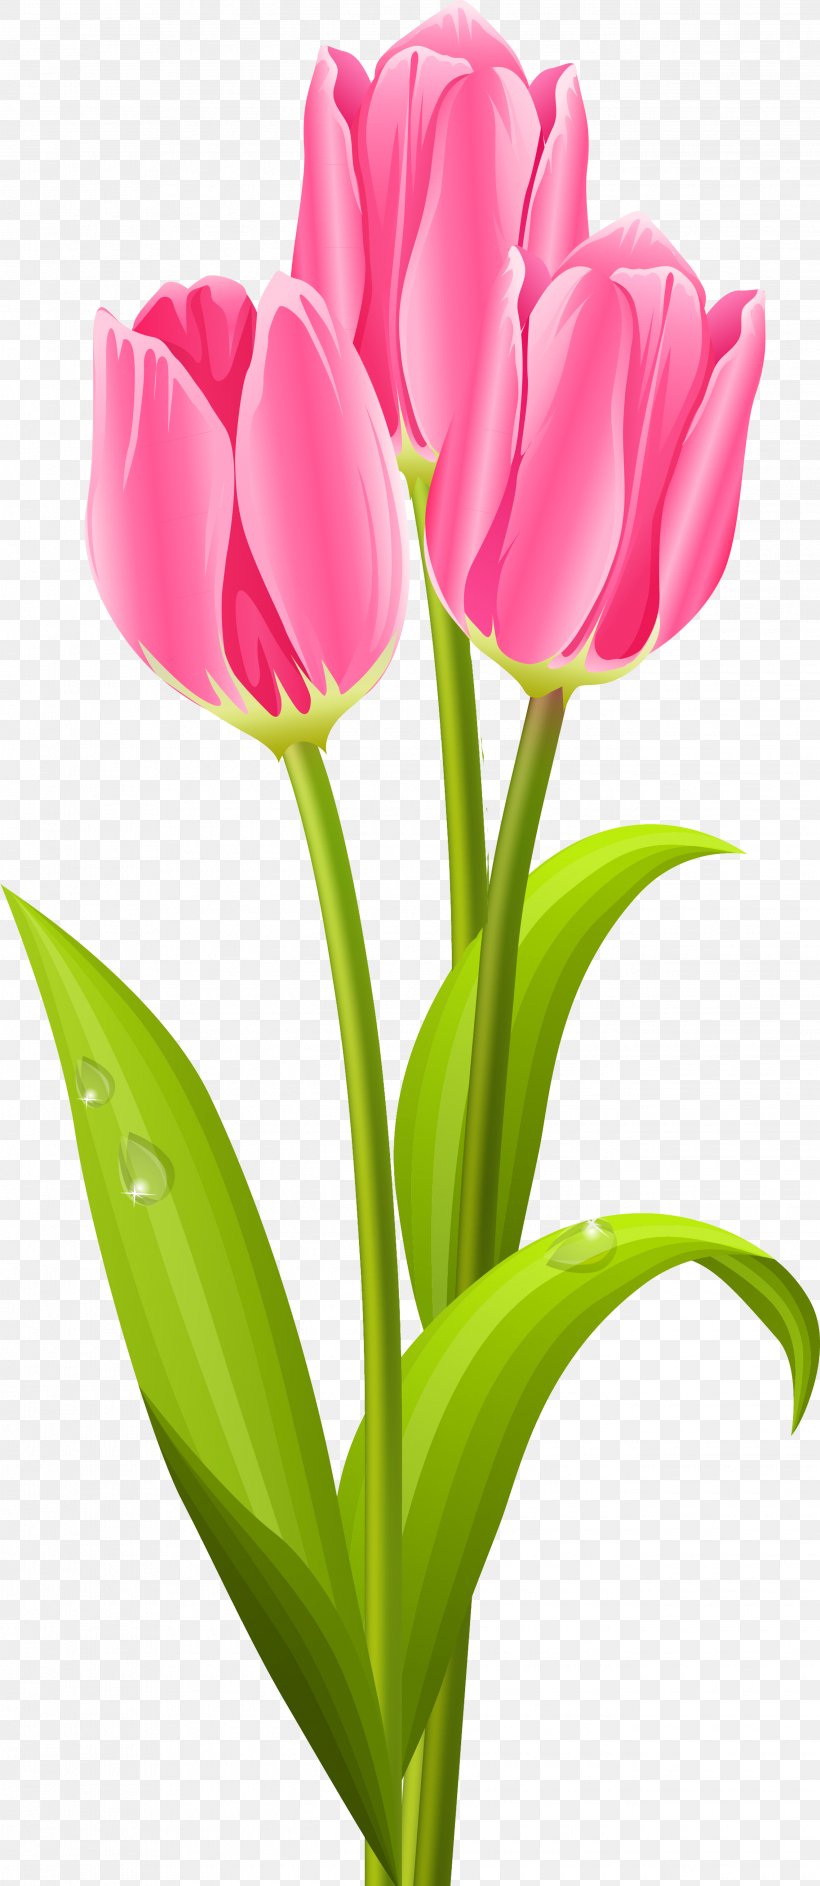 Tulip Flower Bouquet Clip Art, PNG, 2645x6085px, Tulip, Bud, Cut Flowers, Floral Design, Flower Download Free